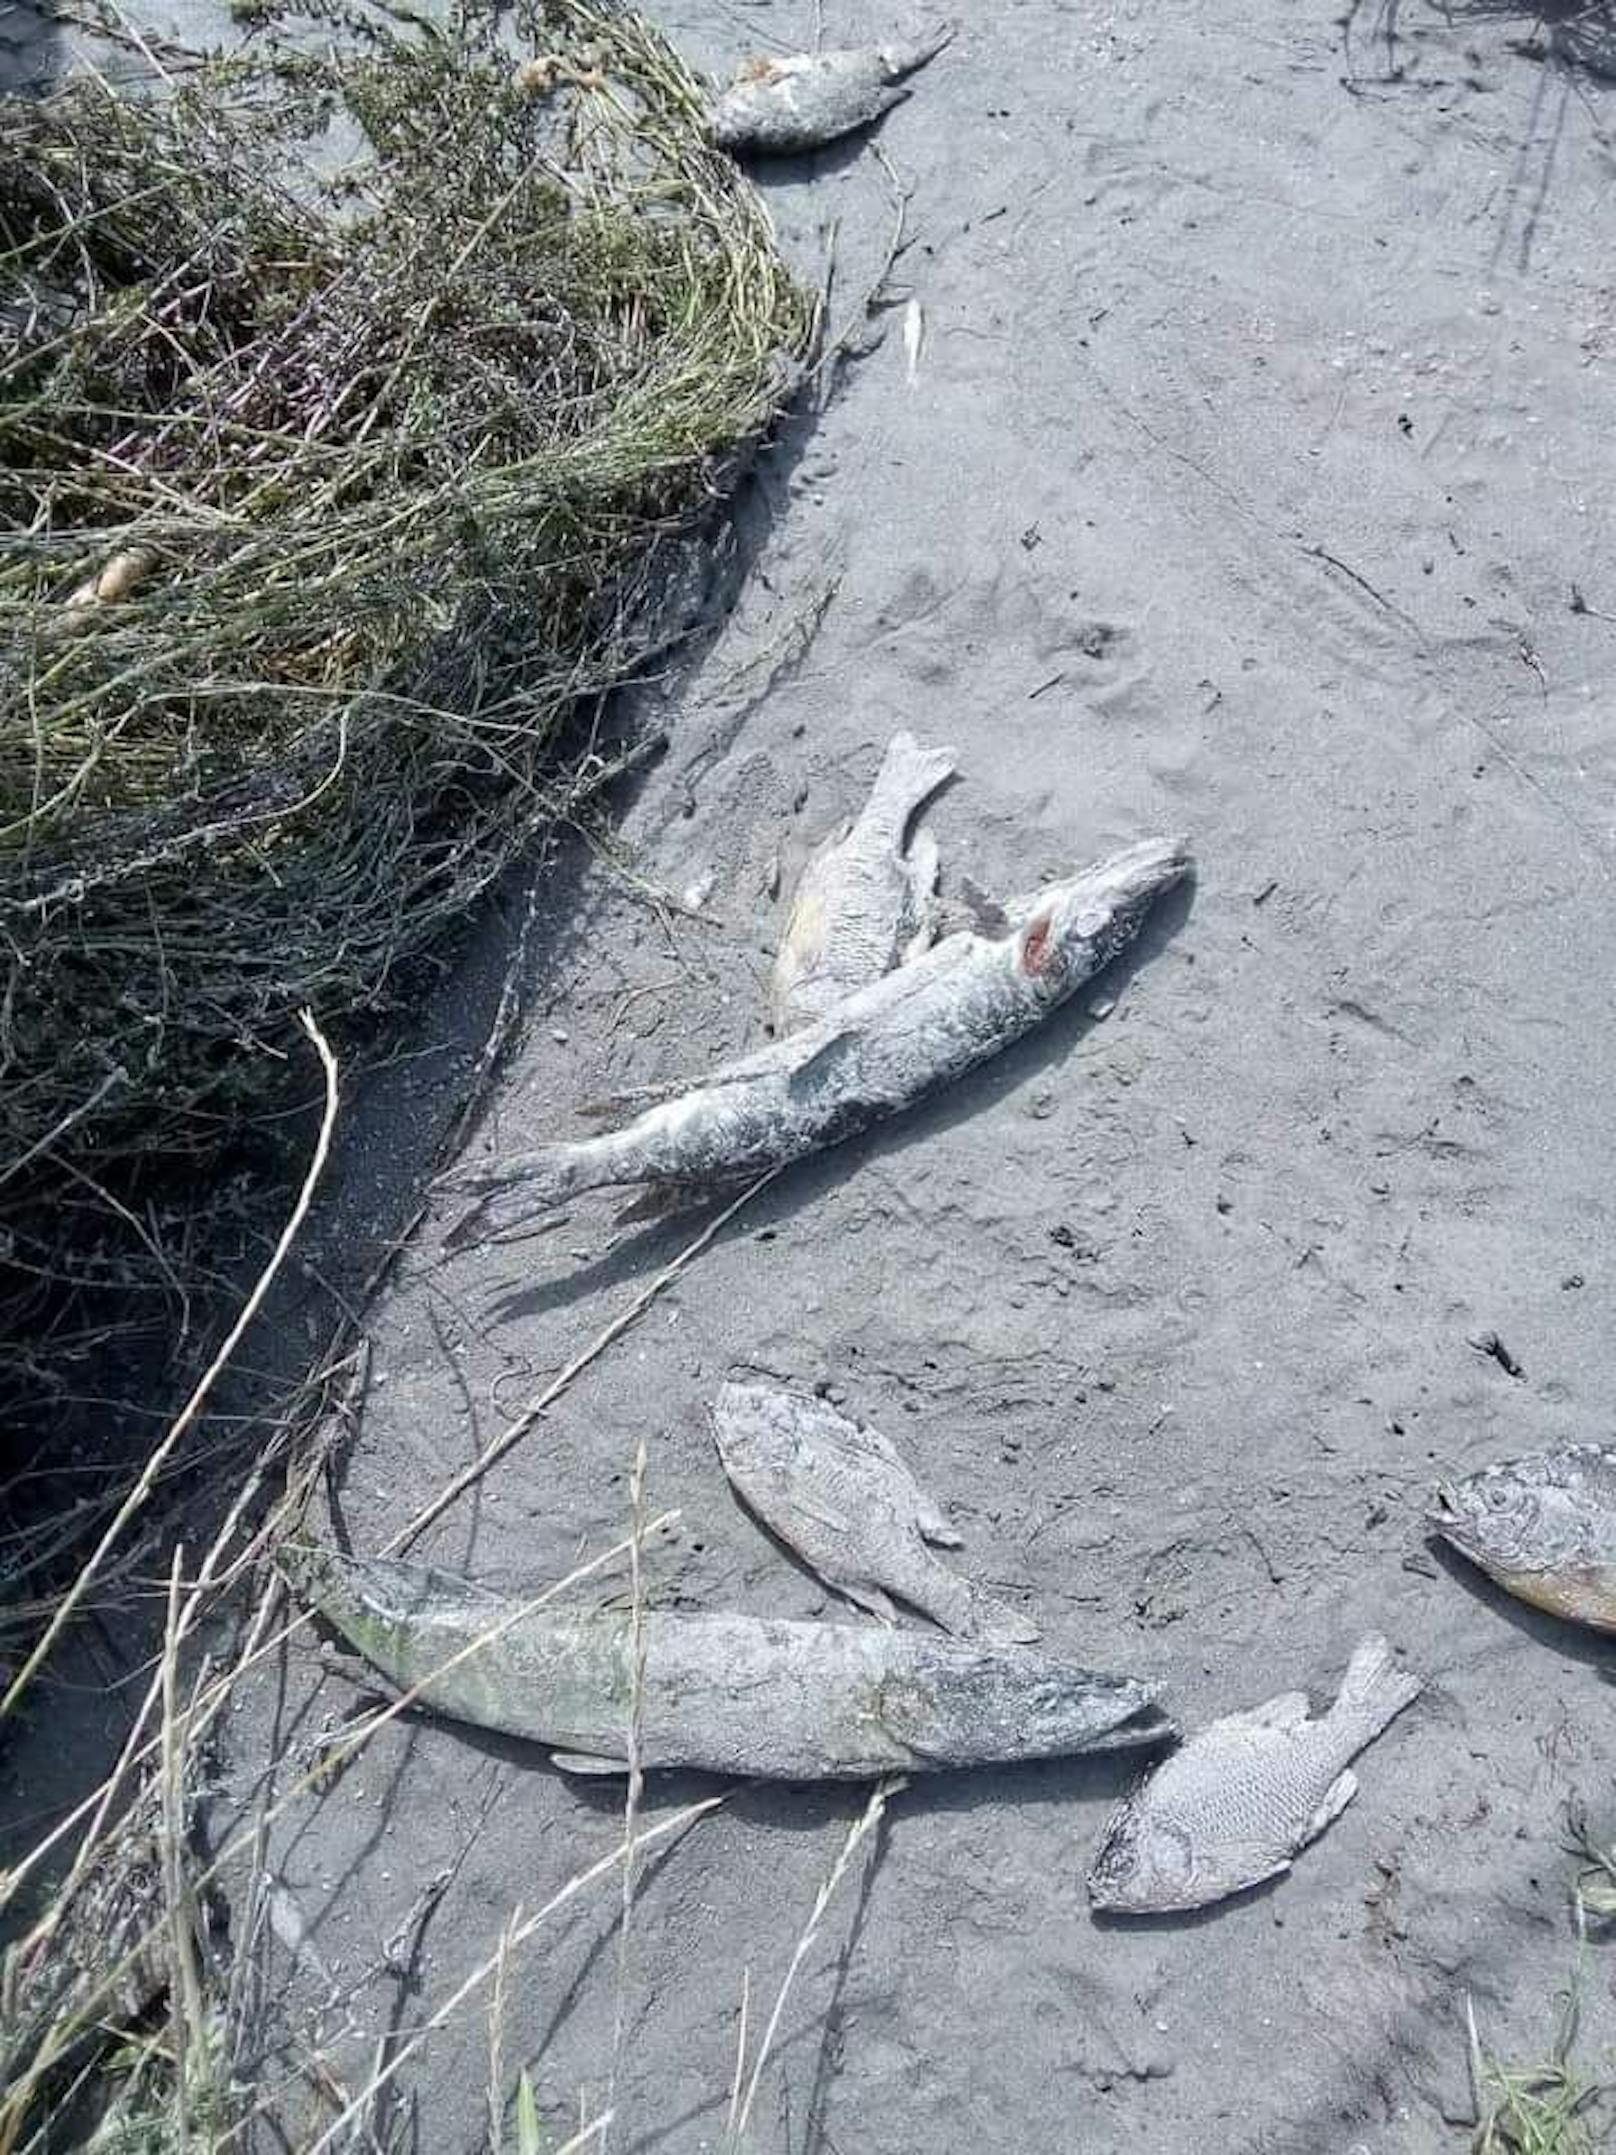 Die Fische starben durch die schlechte Wasserqualität.